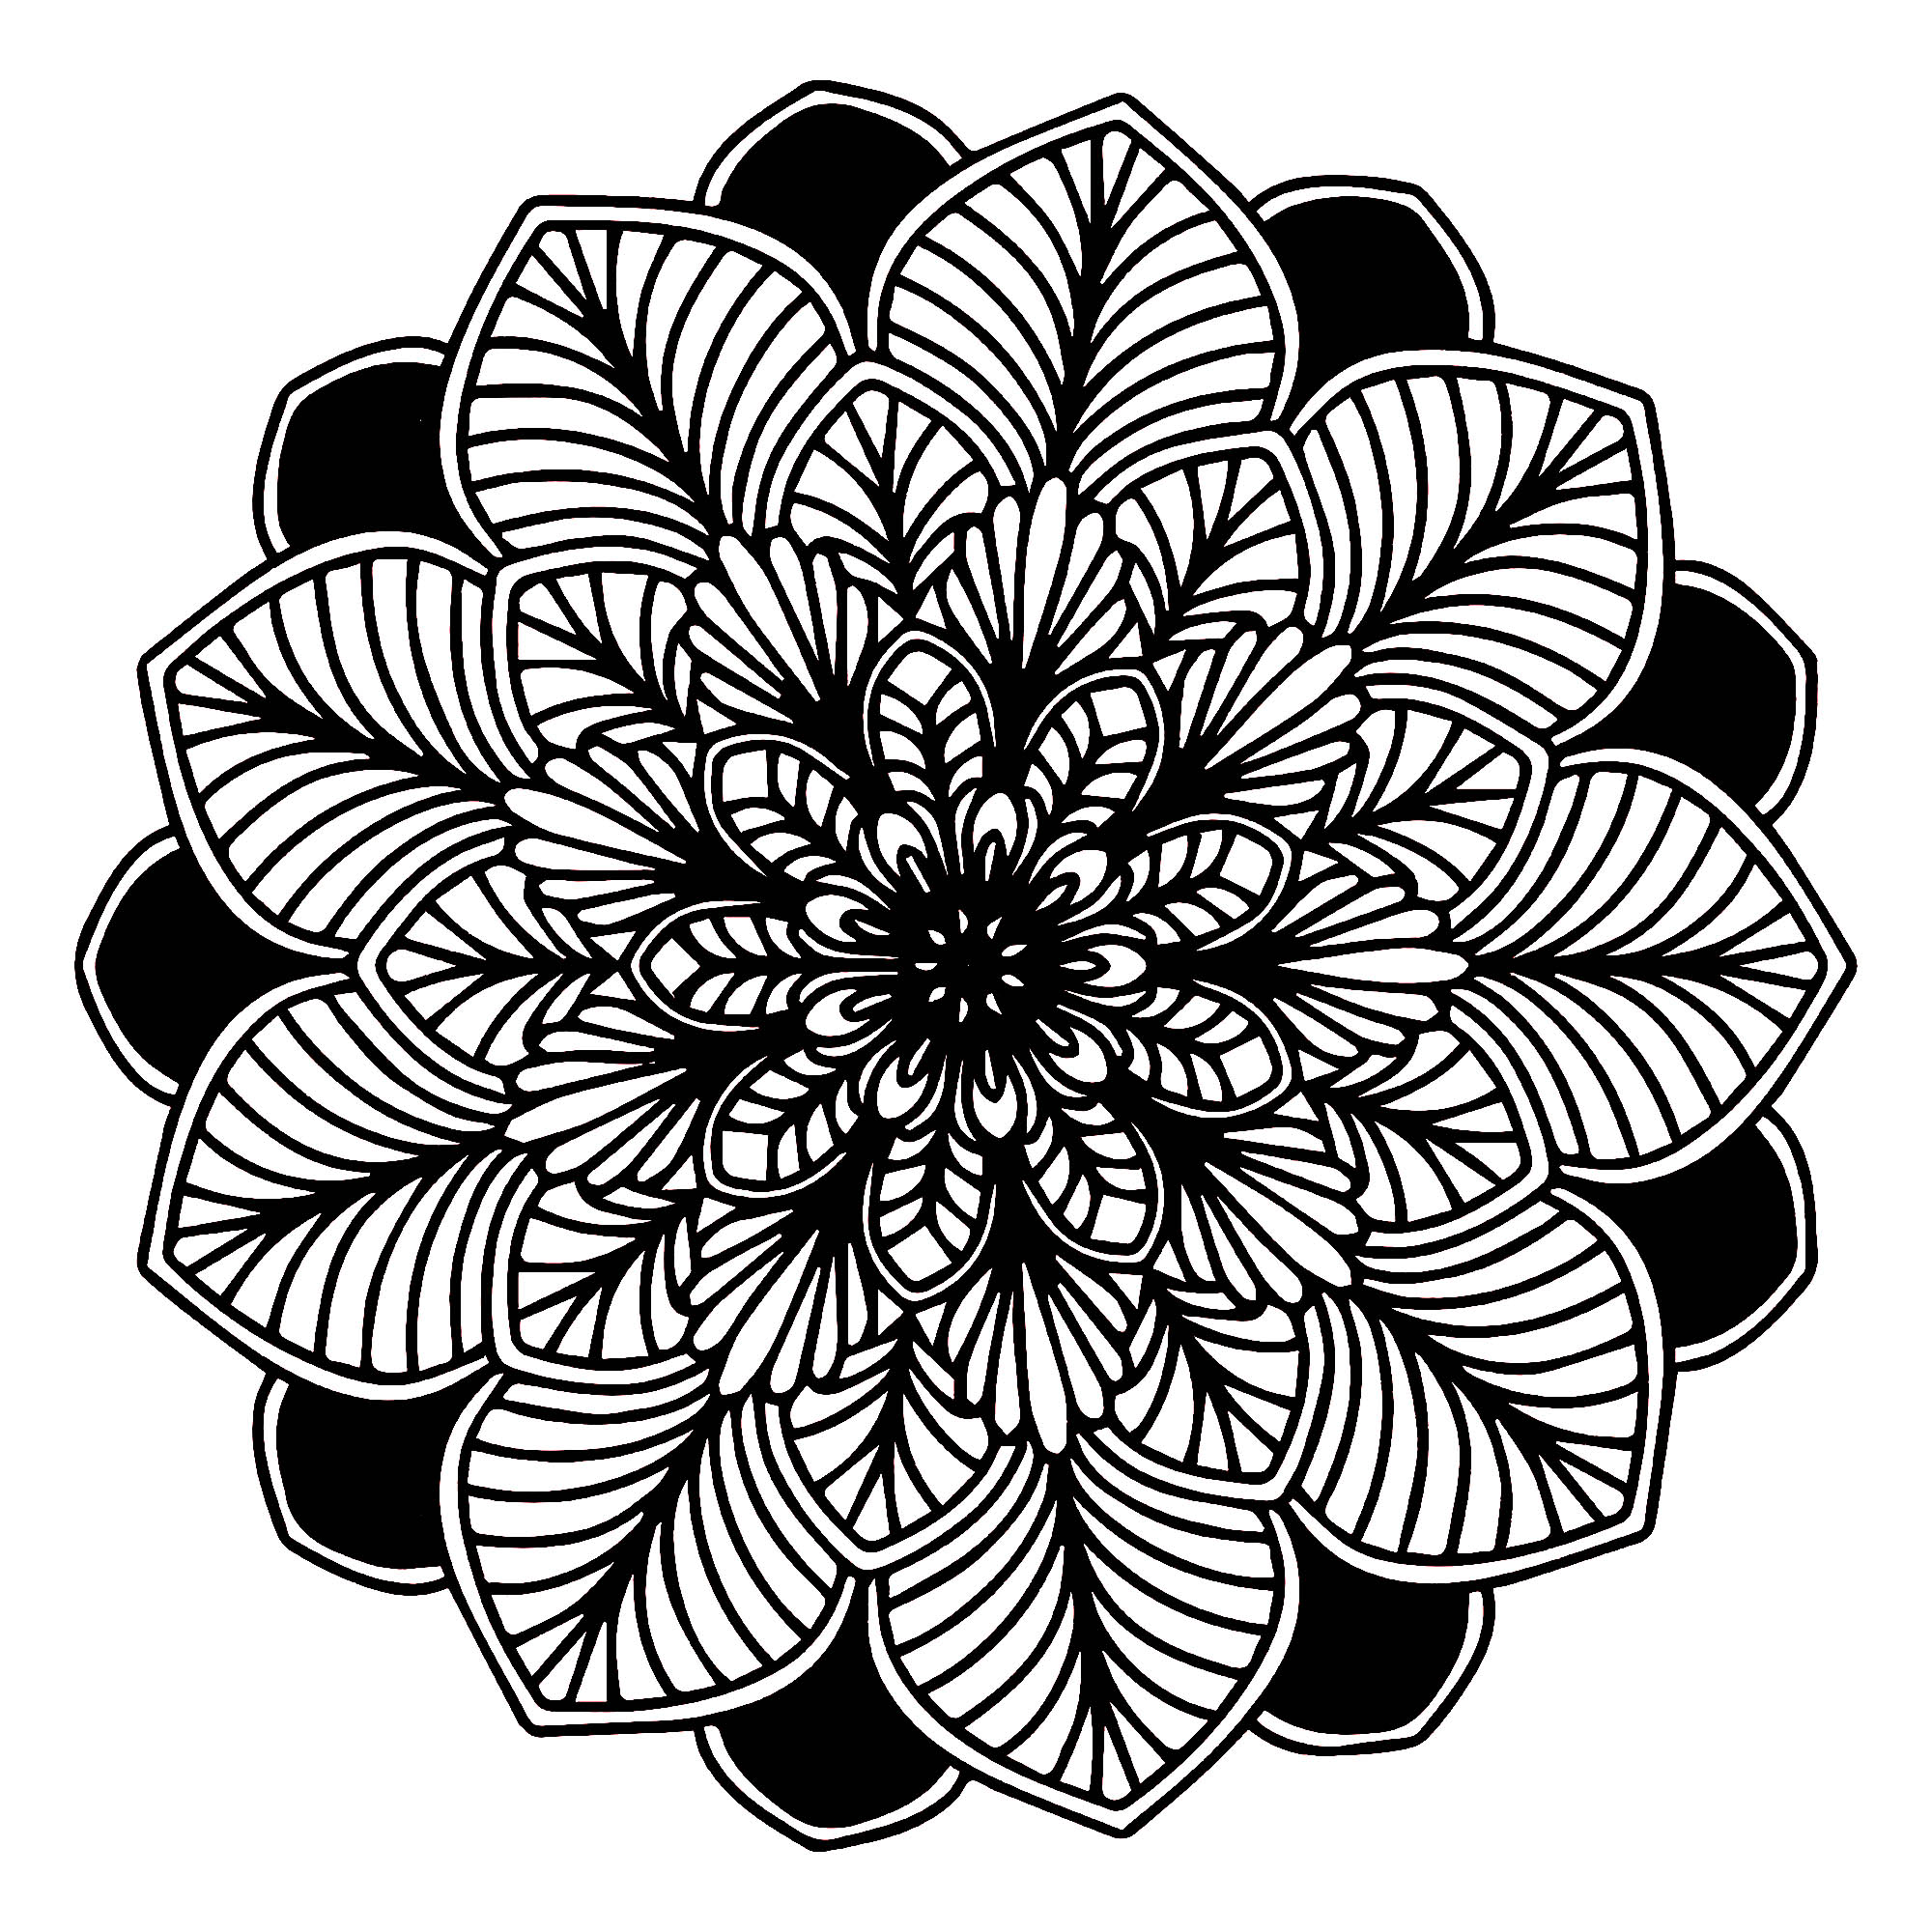 Quando il mondo vegetale è perfettamente integrato in un Mandala, ecco cosa si ottiene, non è magnifico? È composto da foglie: alcune su sfondo nero e altre molto realistiche, con linee spesse.